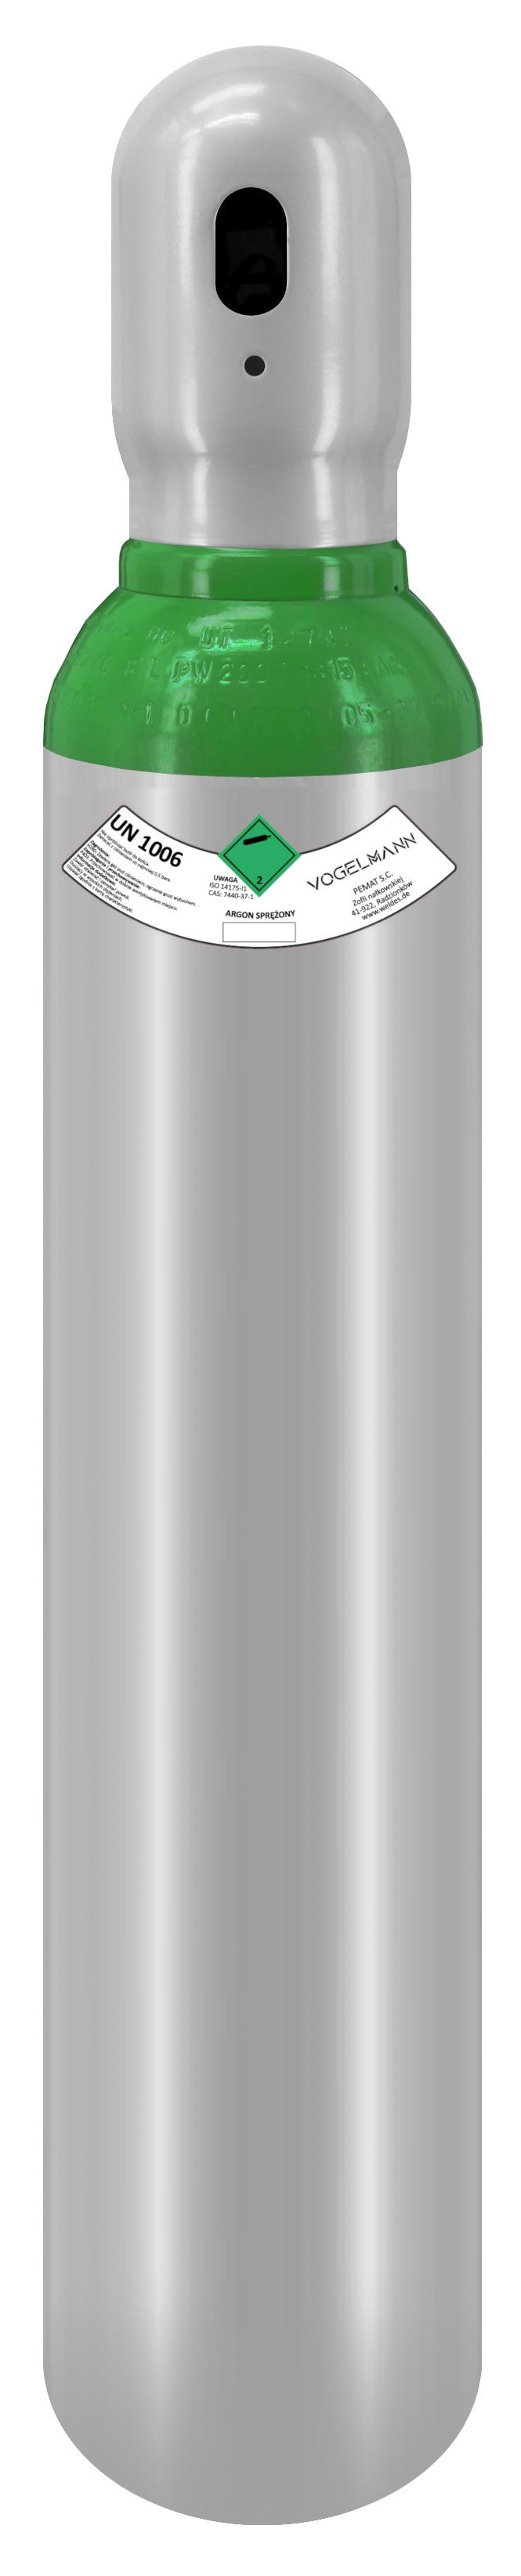 Argon 4.8 full gas cylinder 8L 1,5m3 with Regulator Exakt Vogelmann